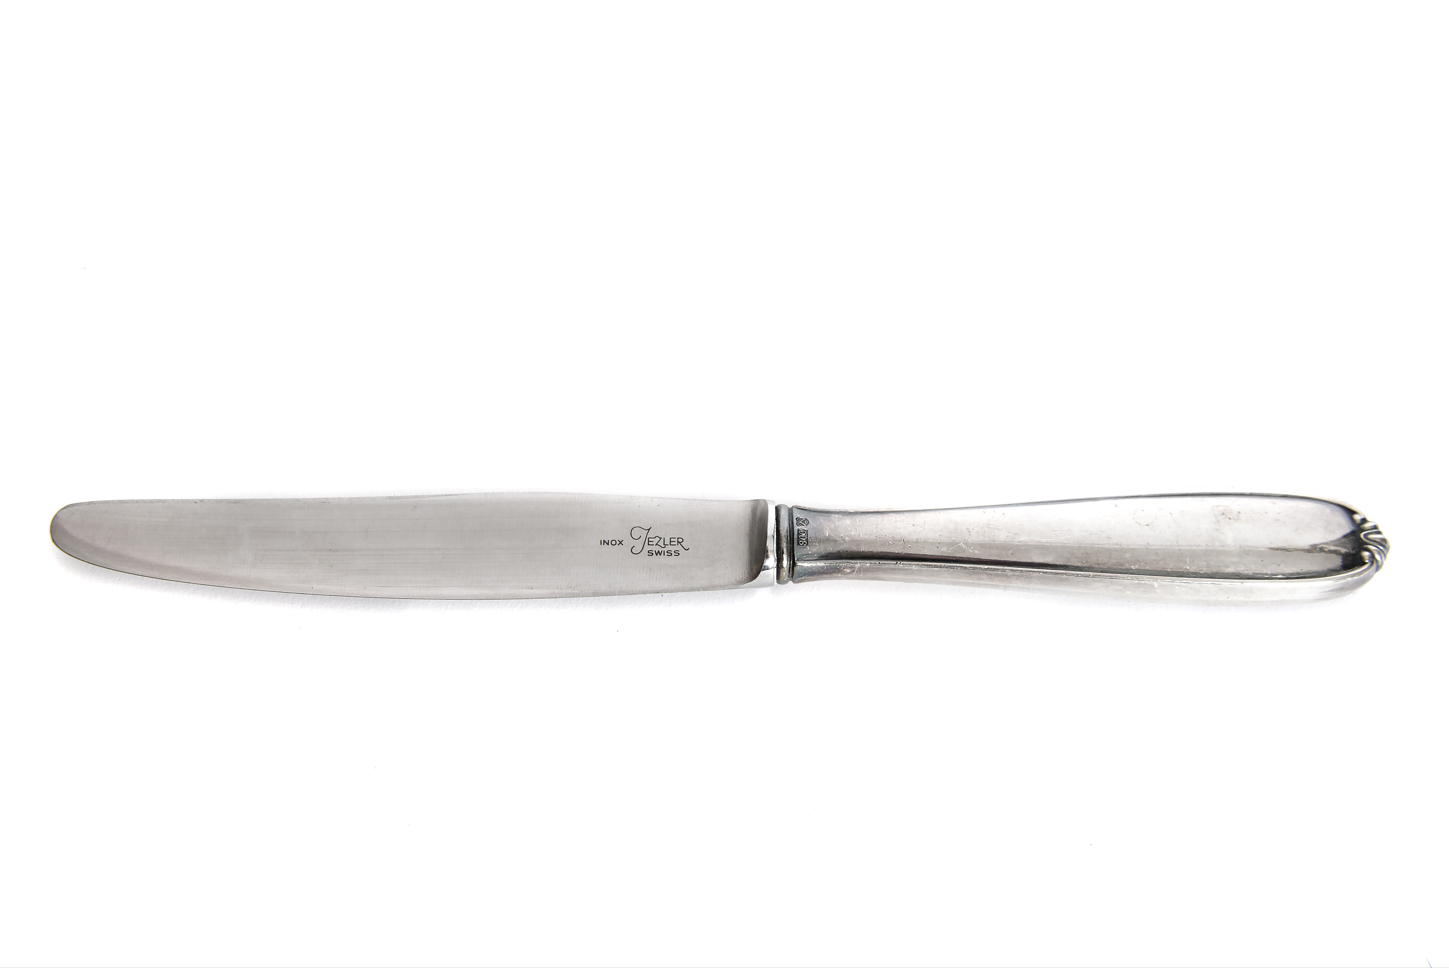 Lot de 12 couteaux de table Alpes inox 18/10 Cromargan® 23,5 cm